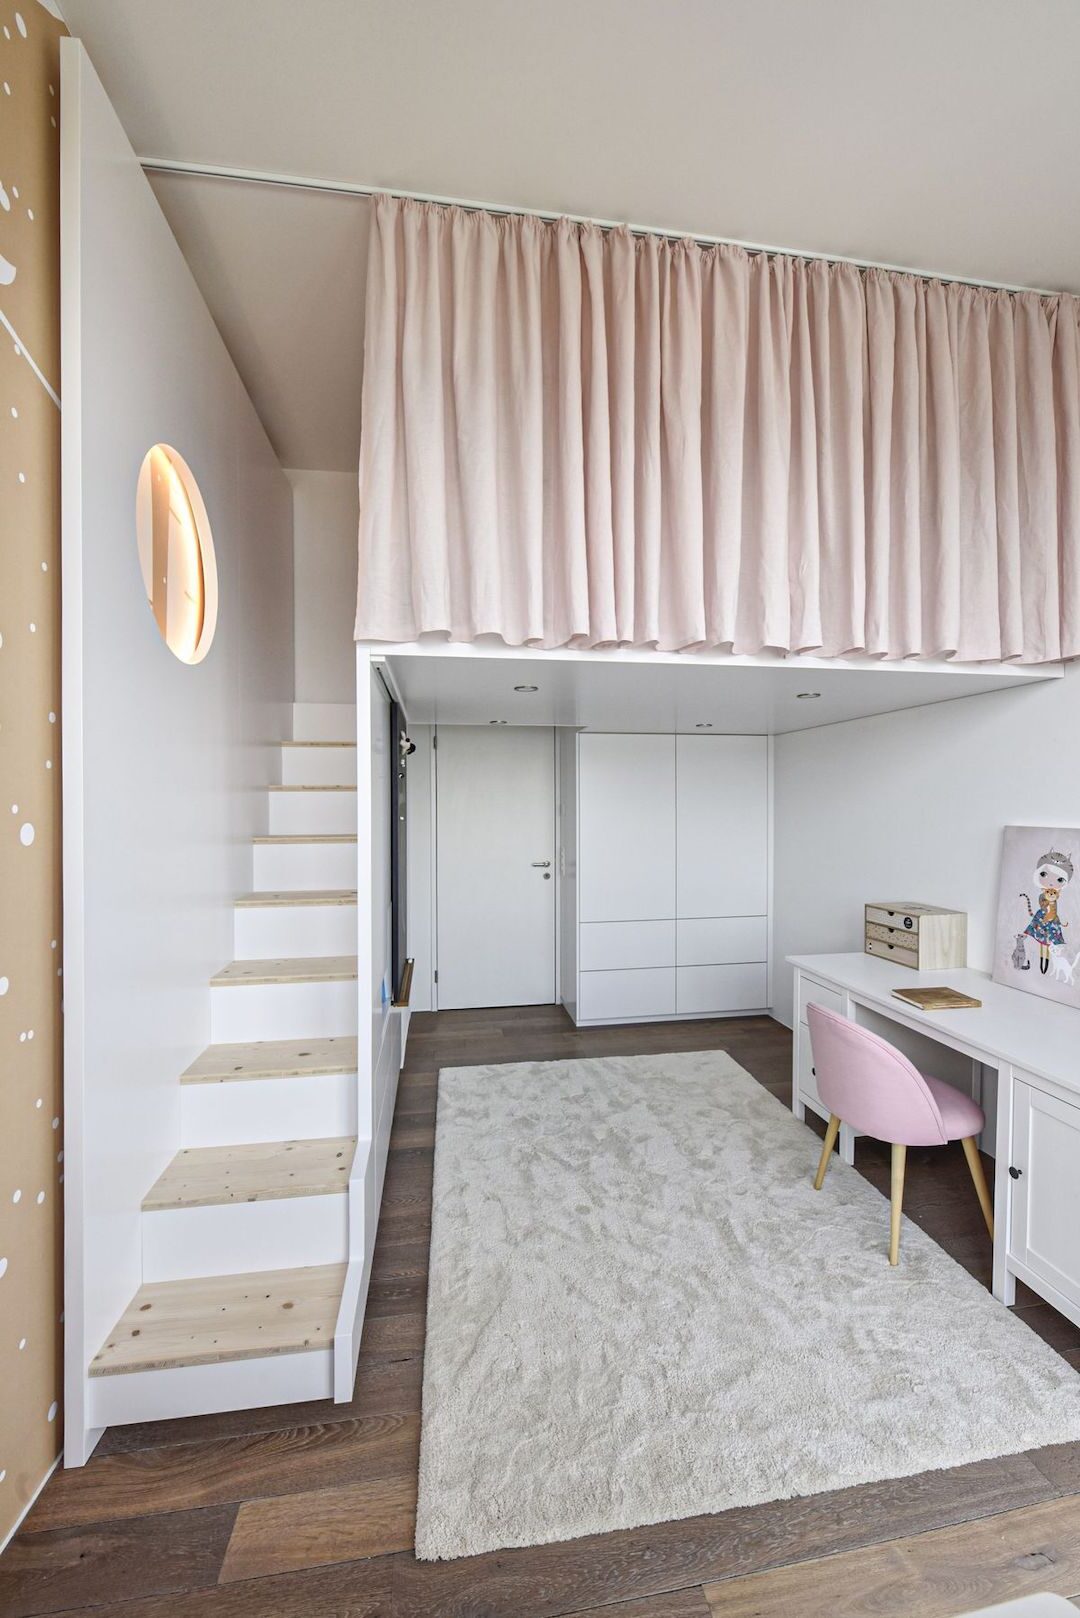 chambre enfant mezzanine escalier blanc rideaux fermés rose pastel tapis blanc